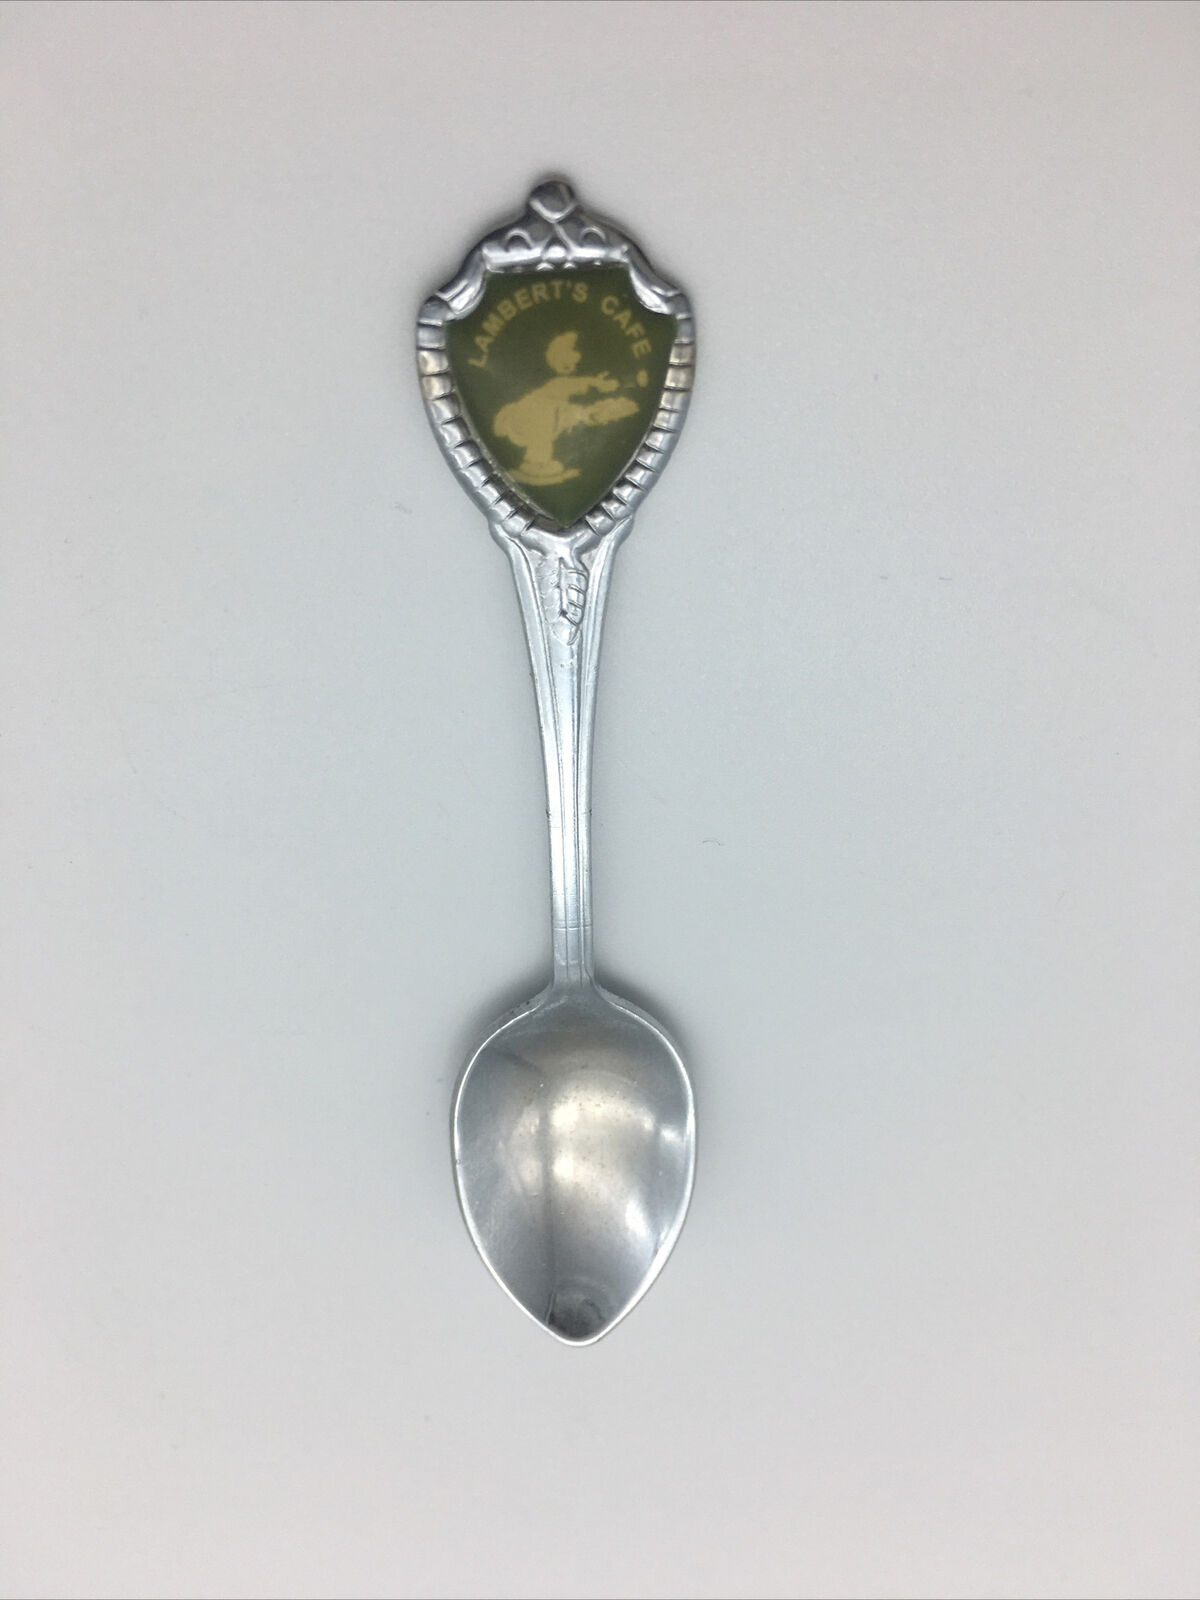 Collectible Souvenir Spoon - Lambert’s Cafe